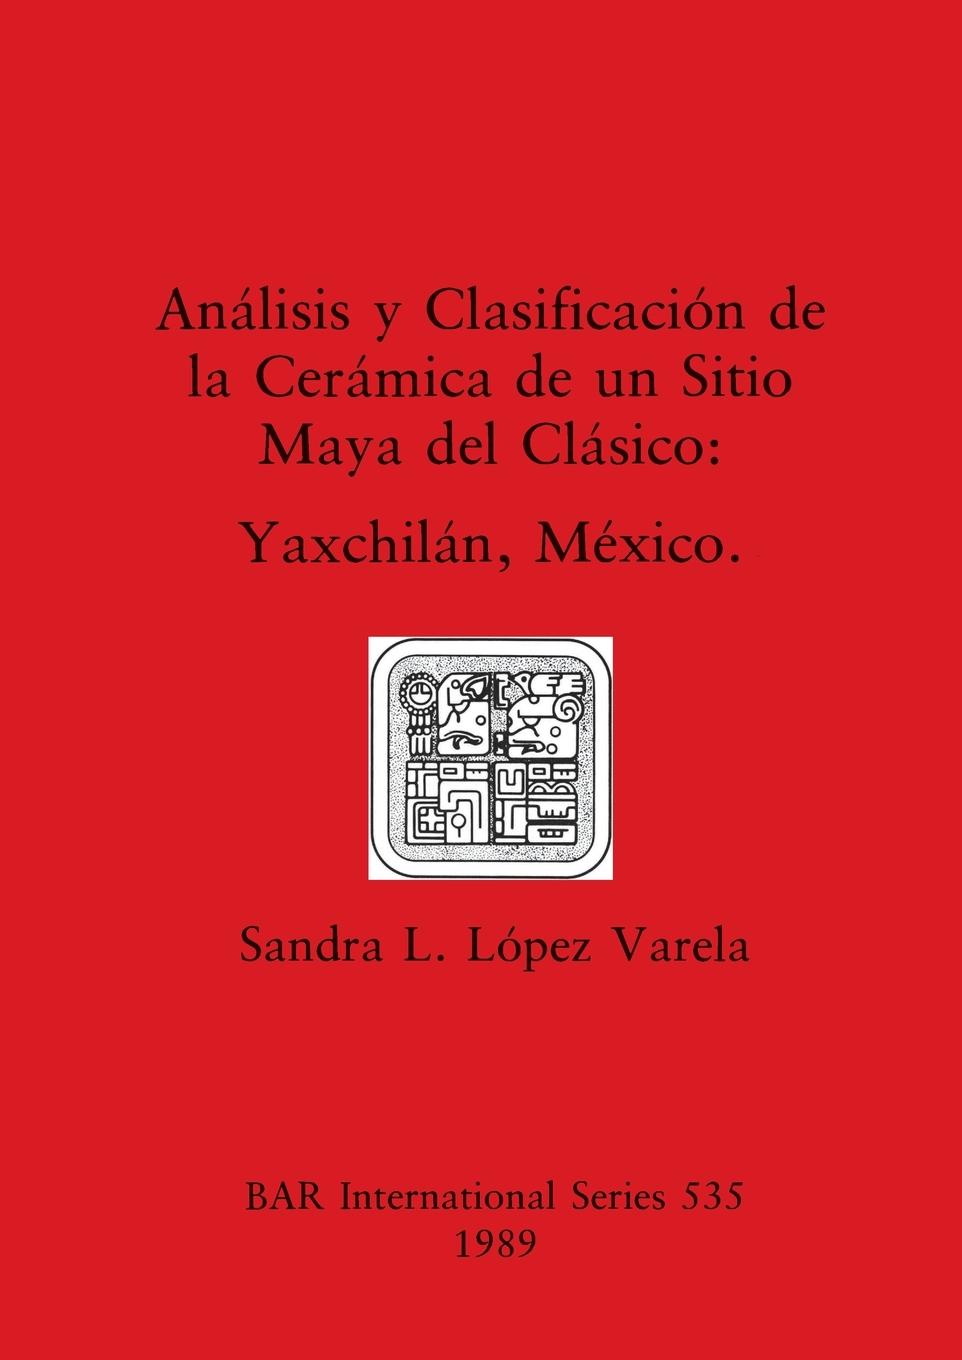 Carte Analisis y Clasificacion de la Ceramico de un Sitio Maya del Clasico 